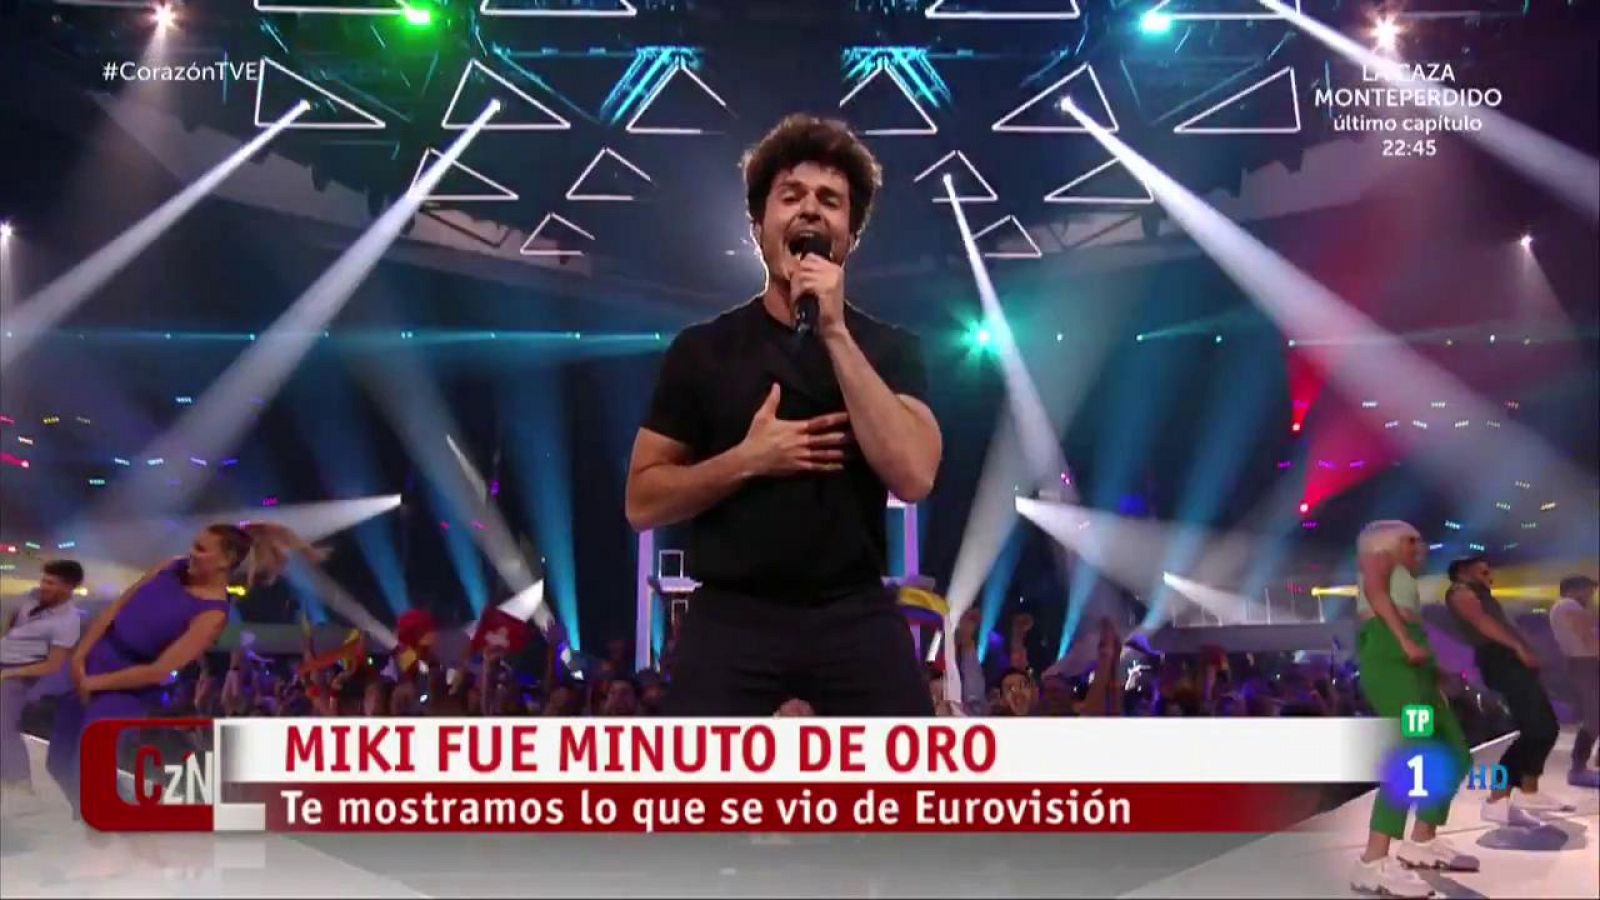 Eurovisión 2019: Miki, recibido entre aplausos tras su regreso de Eurovisión 2019